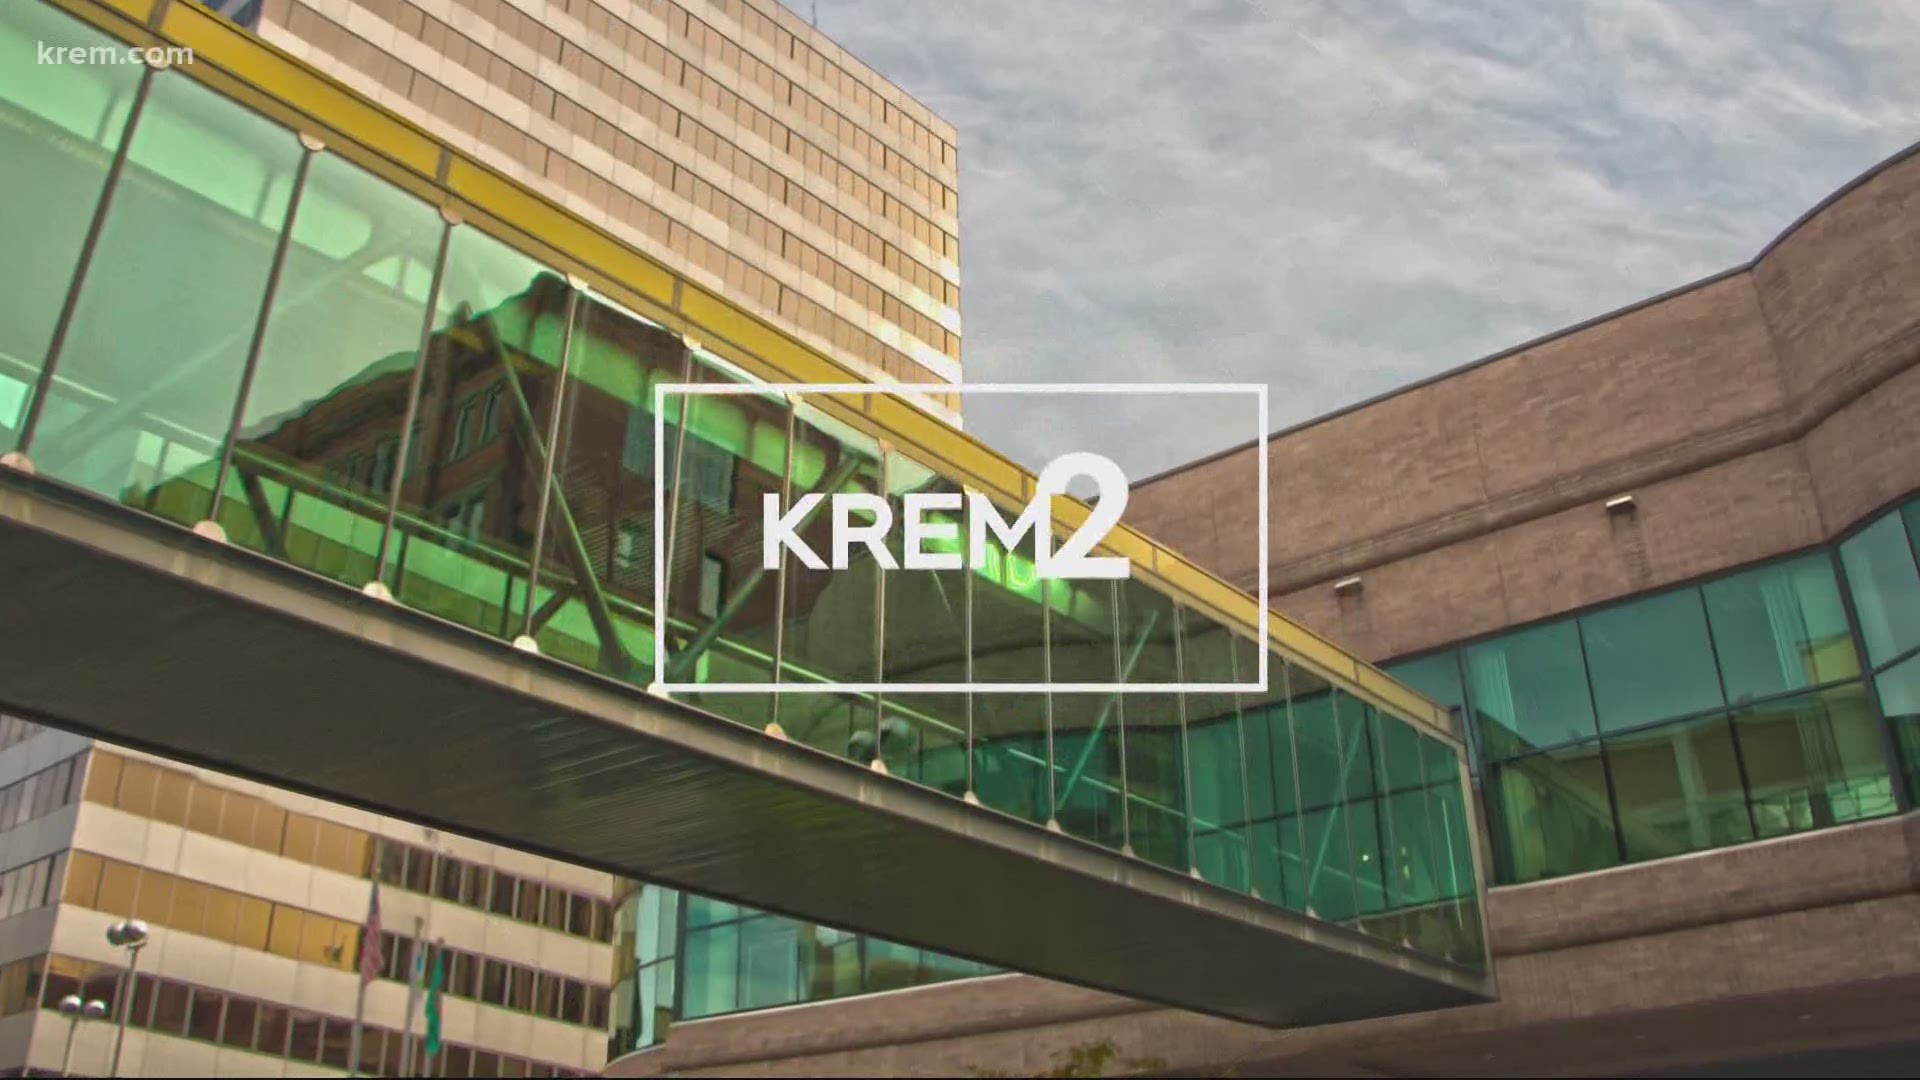 KREM 2 News headlines at 6 p.m. on August 11, 2020.